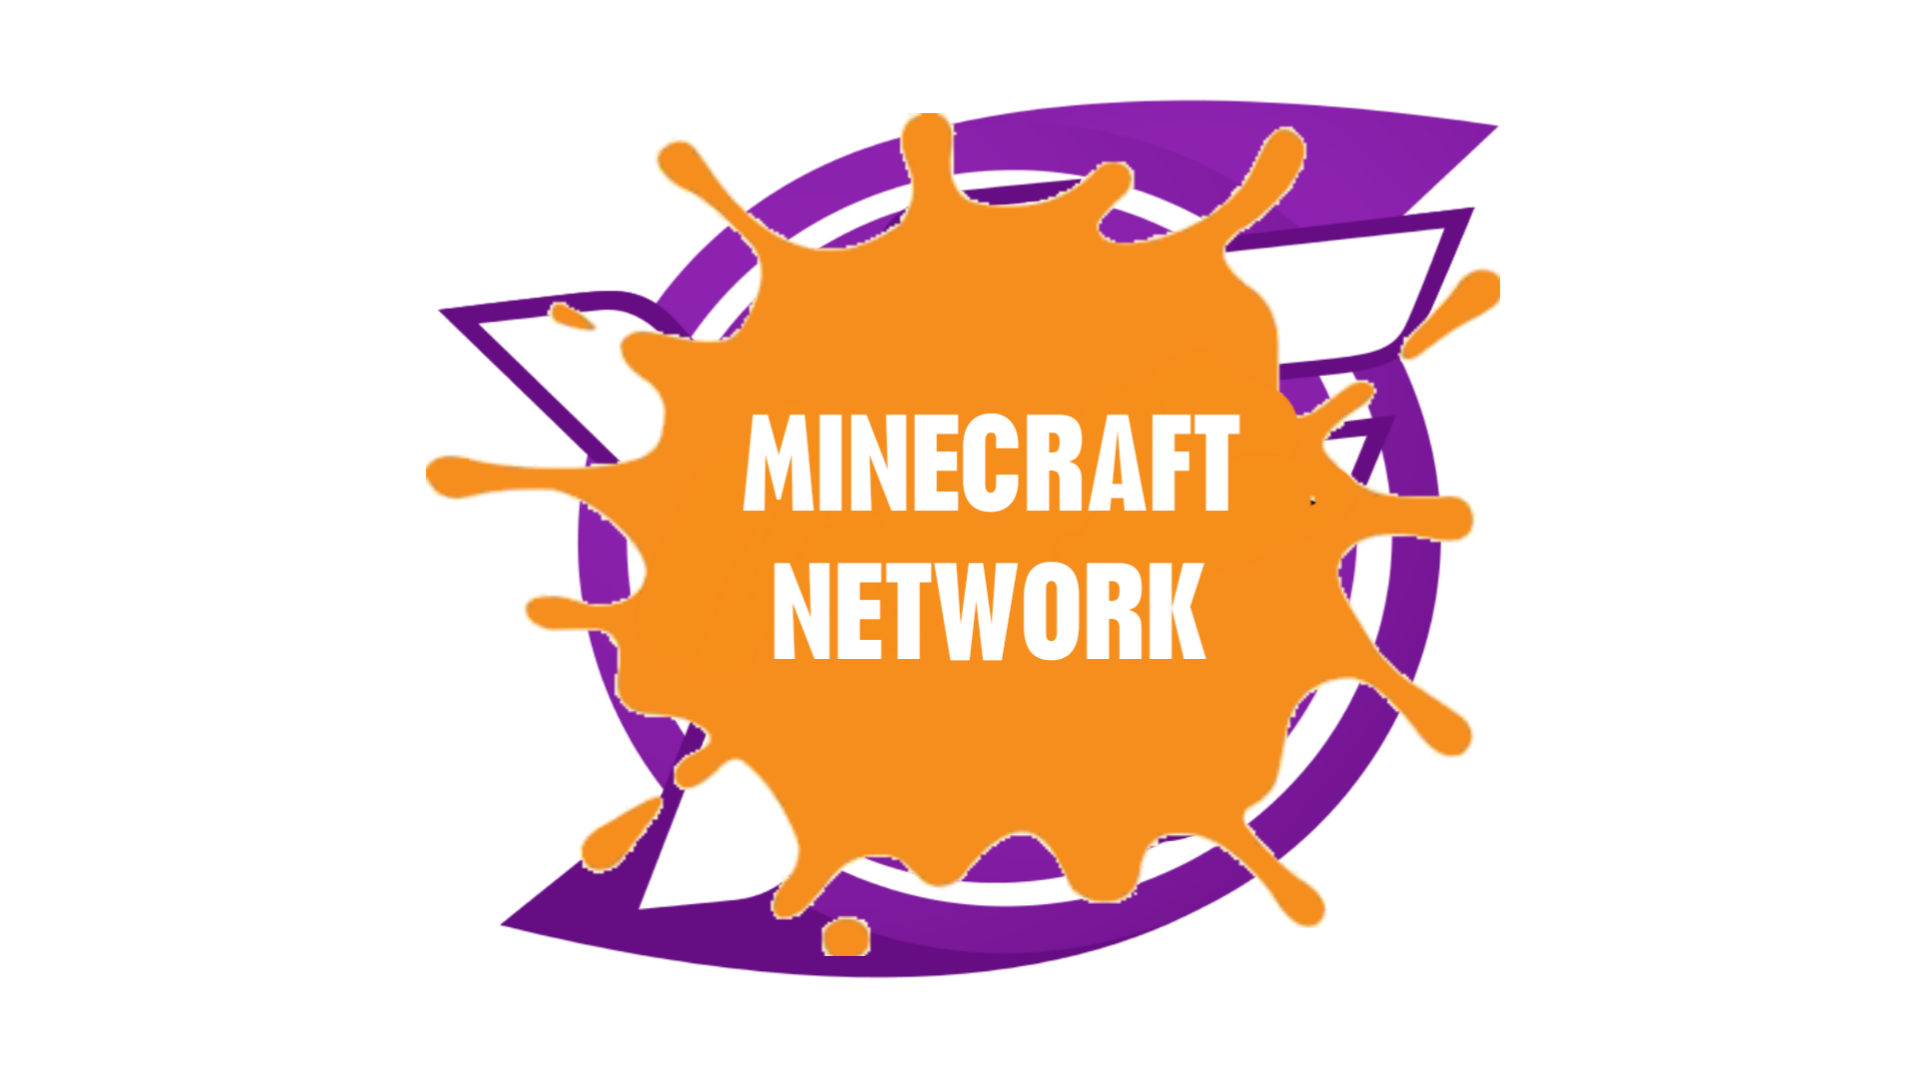 Minecraft Network Dream Logos Wiki Fandom - dream logo minecraft roblox